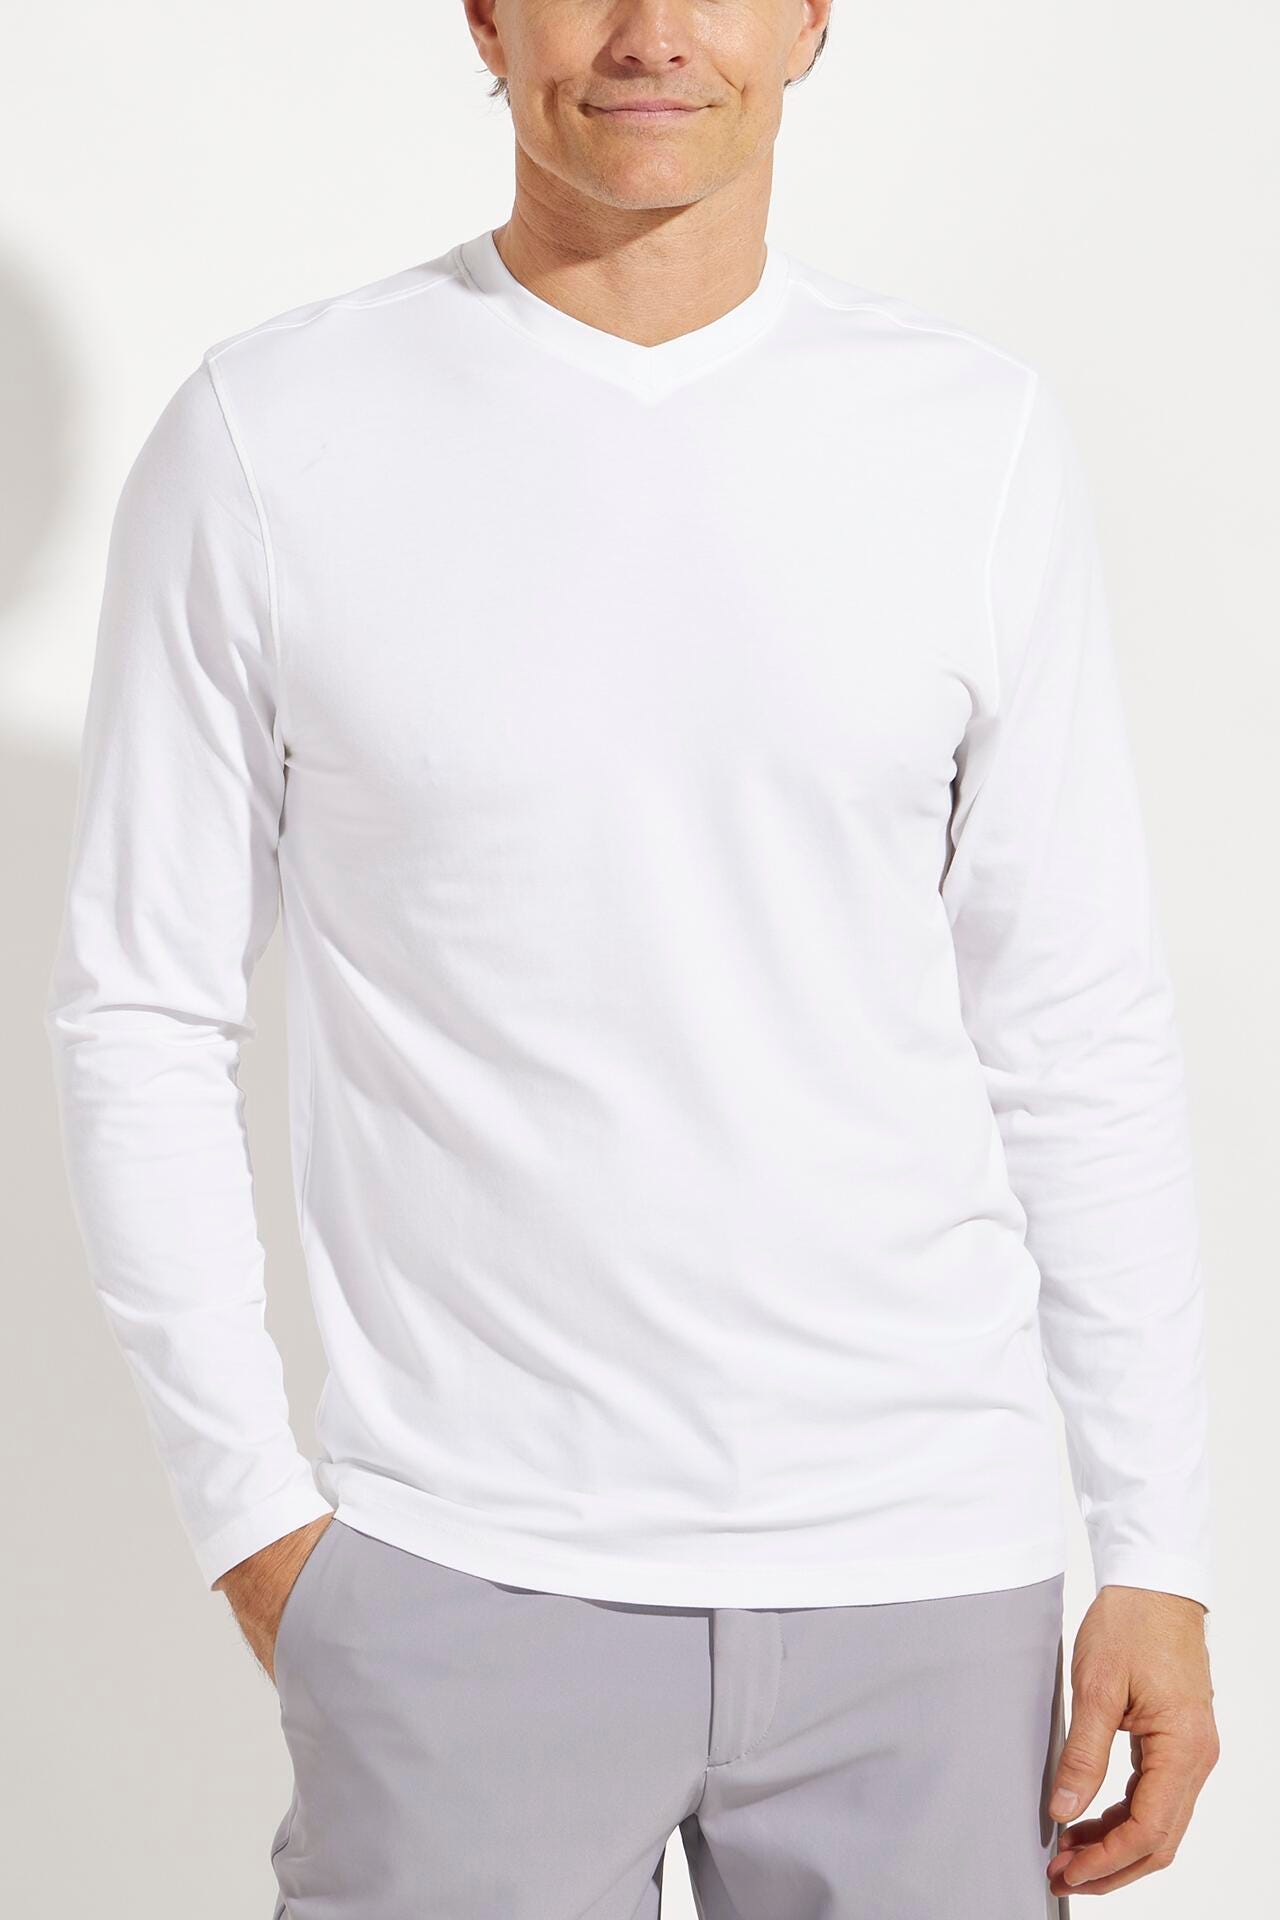 Coolibar Men's Morada Everyday Long Sleeve V-Neck T-Shirt UPF 50+, White / S